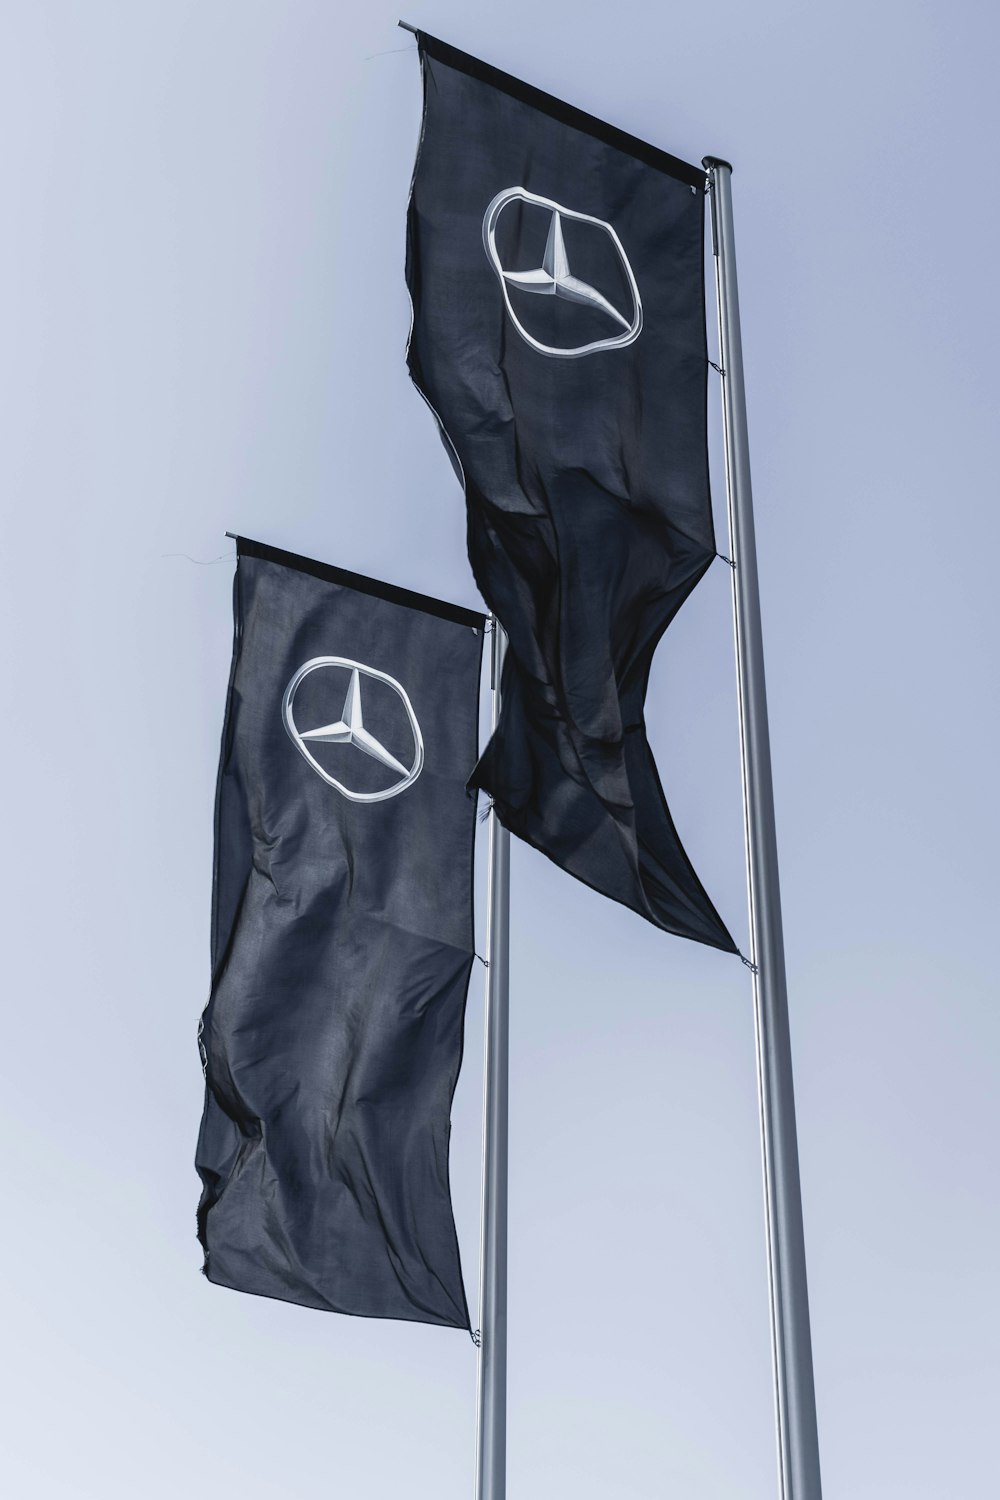 Banderas de Mercedes-Benz y Scion ondeando